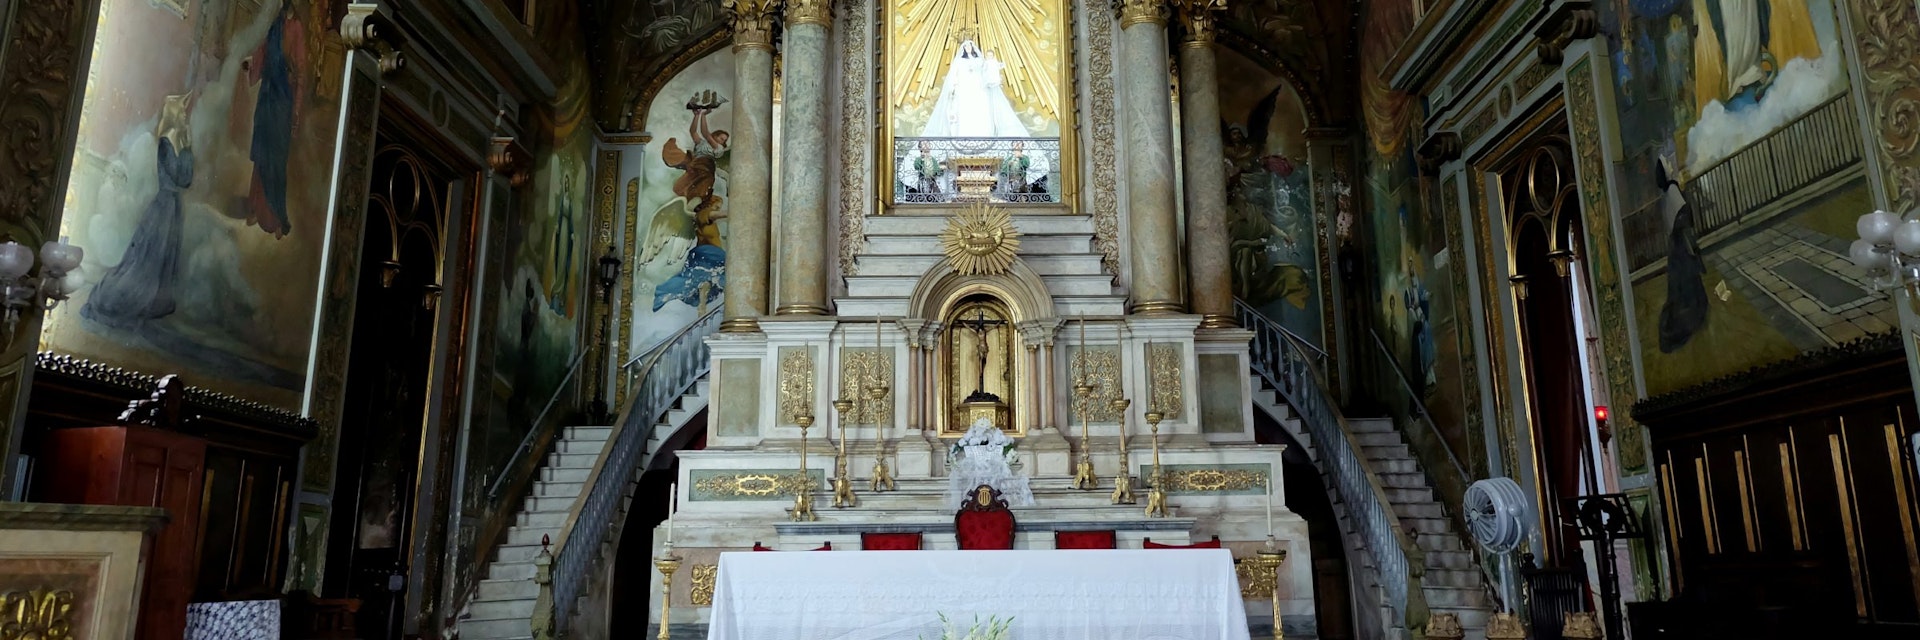 Baroque interior of the Iglesia y Convento de Nuestra Señora de la Merced.